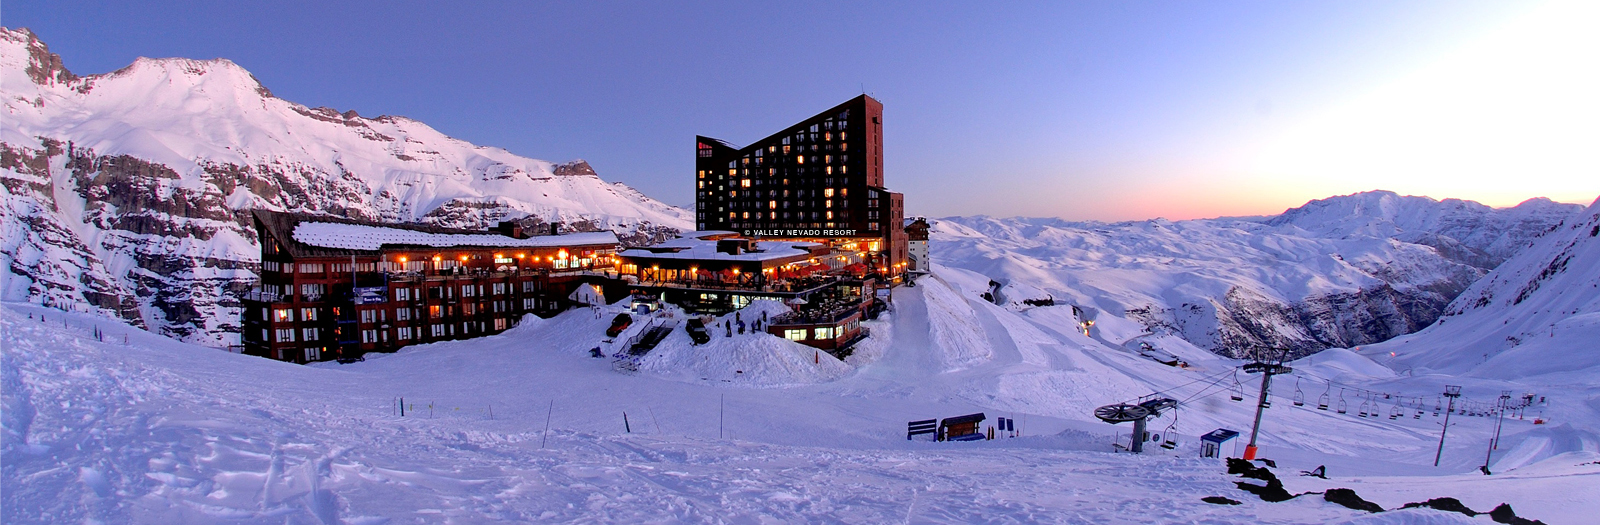 valle nevado ski resort, valle nevado chile, valle nevado resort, valle nevado ski trip